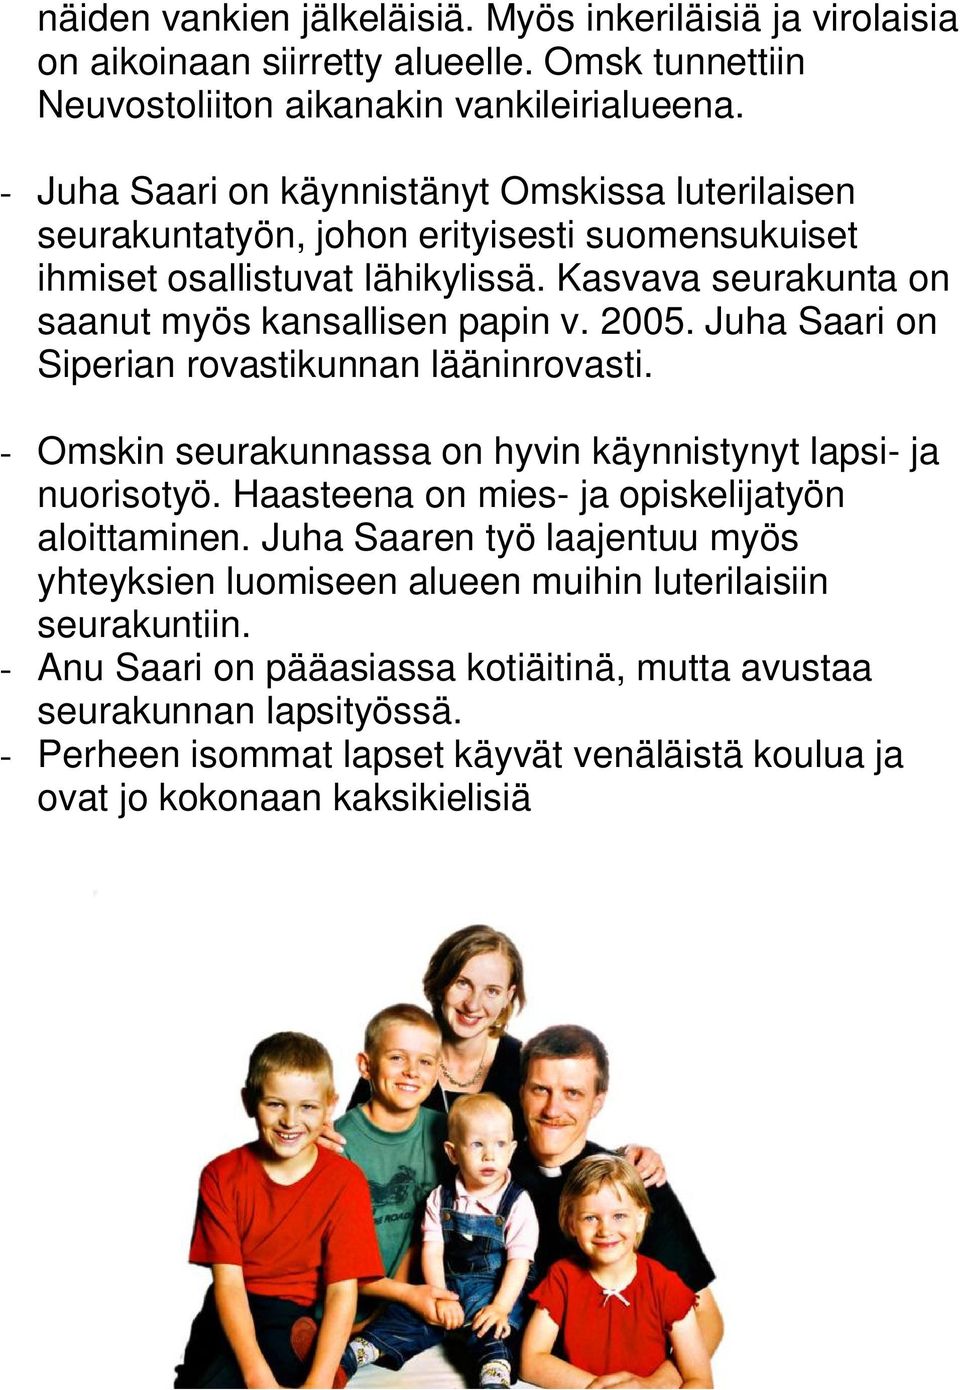 2005. Juha Saari on Siperian rovastikunnan lääninrovasti. - Omskin seurakunnassa on hyvin käynnistynyt lapsi- ja nuorisotyö. Haasteena on mies- ja opiskelijatyön aloittaminen.